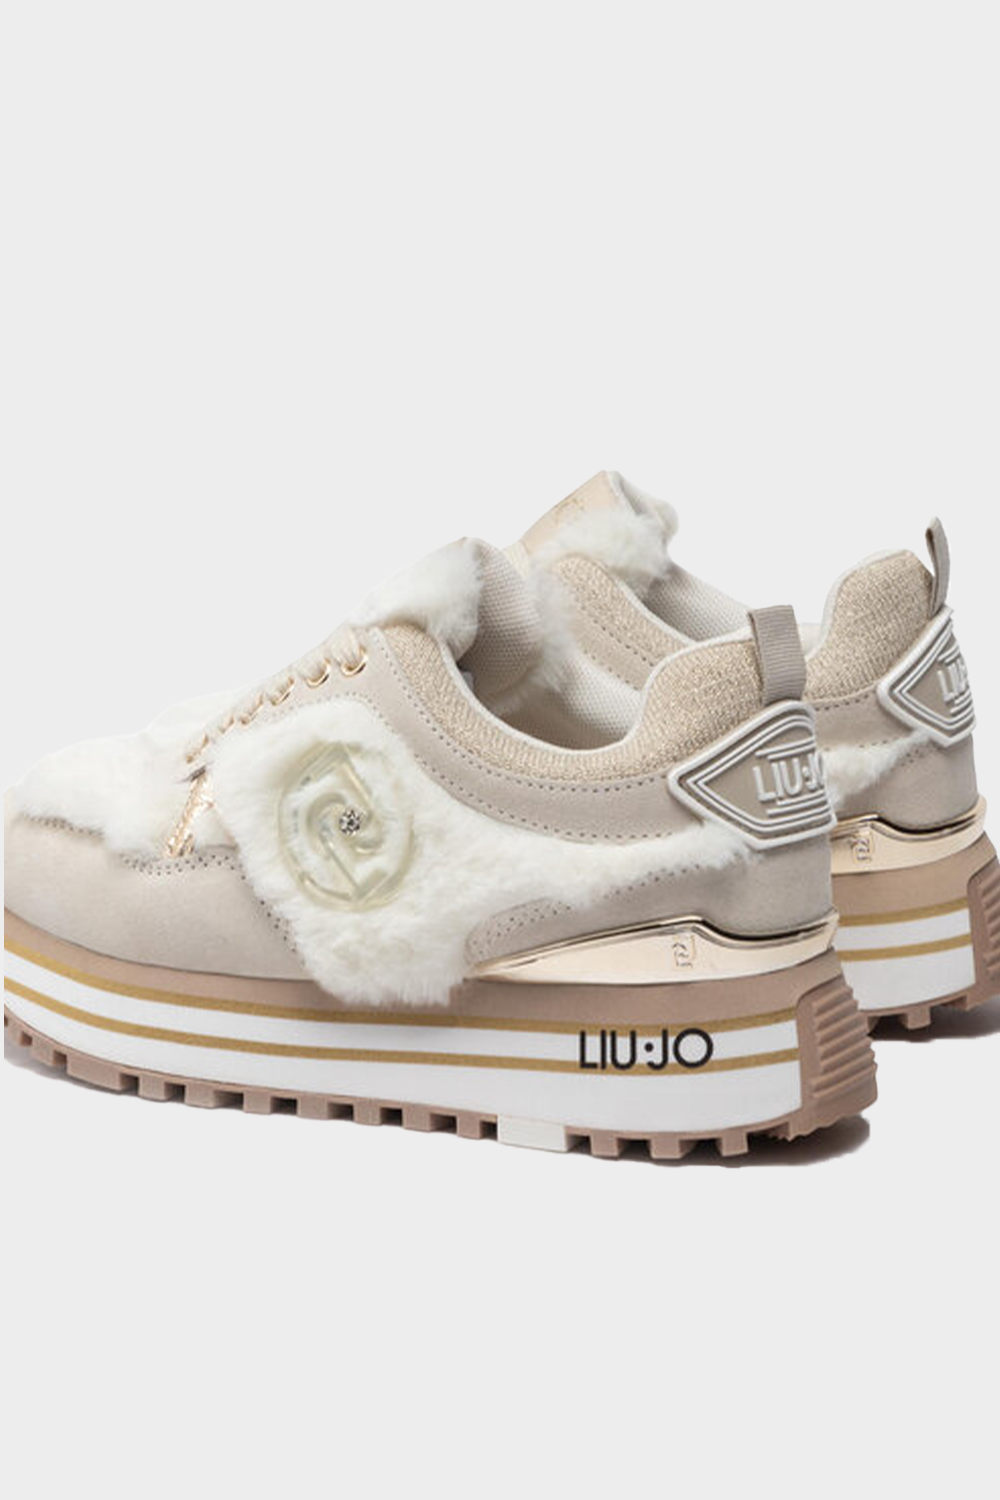 נעלי סניקרס פרווה לנשים בצבע לבן LIU JO Vendome online | ונדום .